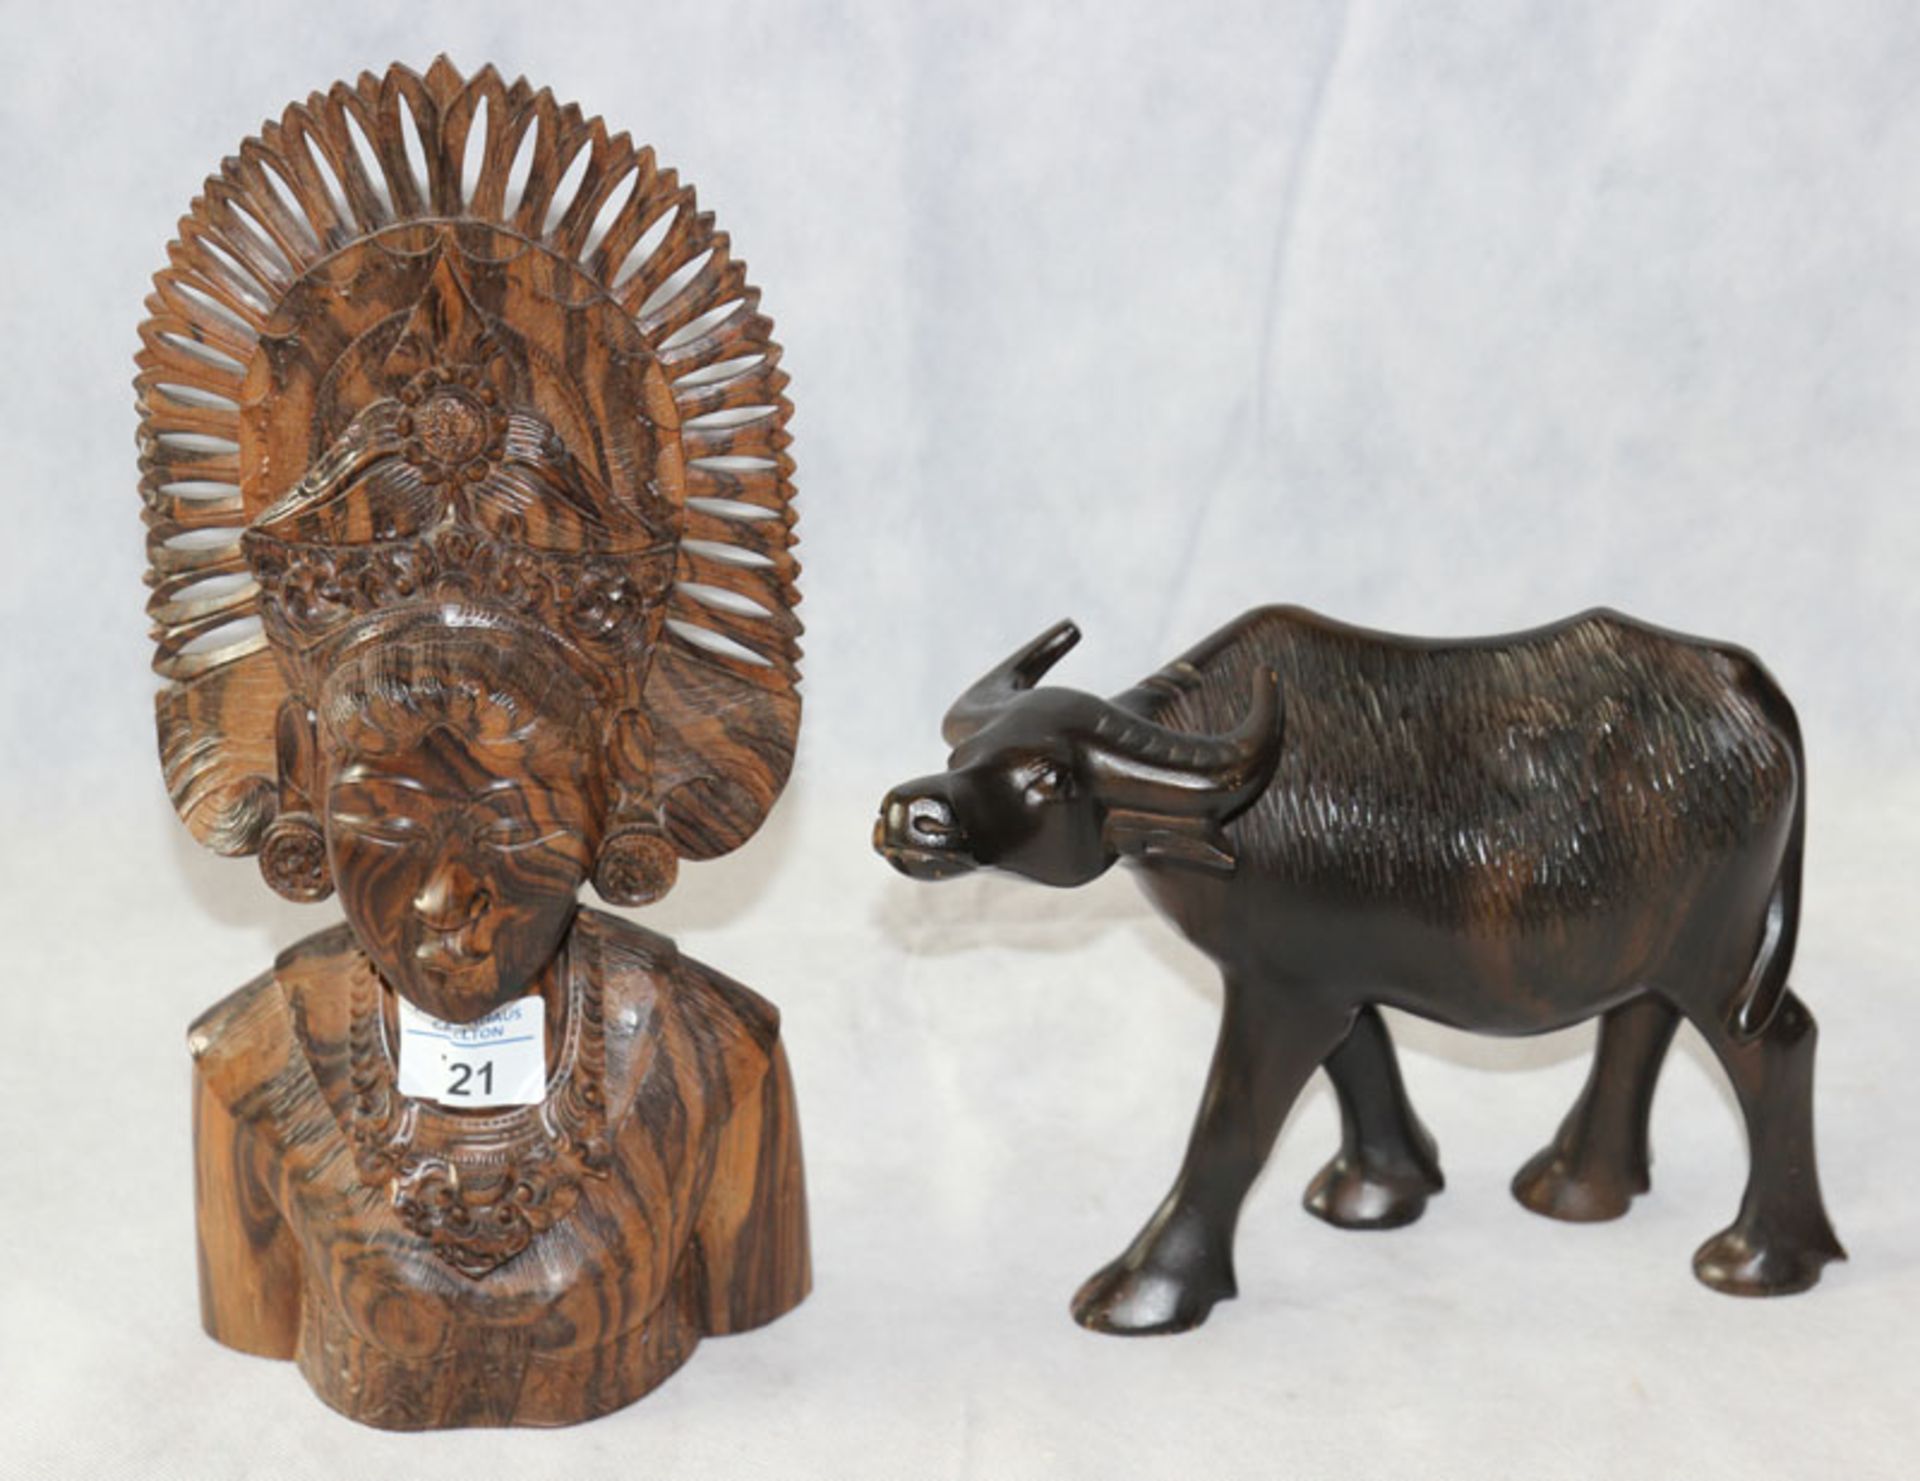 Holz Figurenskulptur 'Balinesische Frauenbüste', fein geschnitzt, H 31 cm, und Holz Tierfigur '